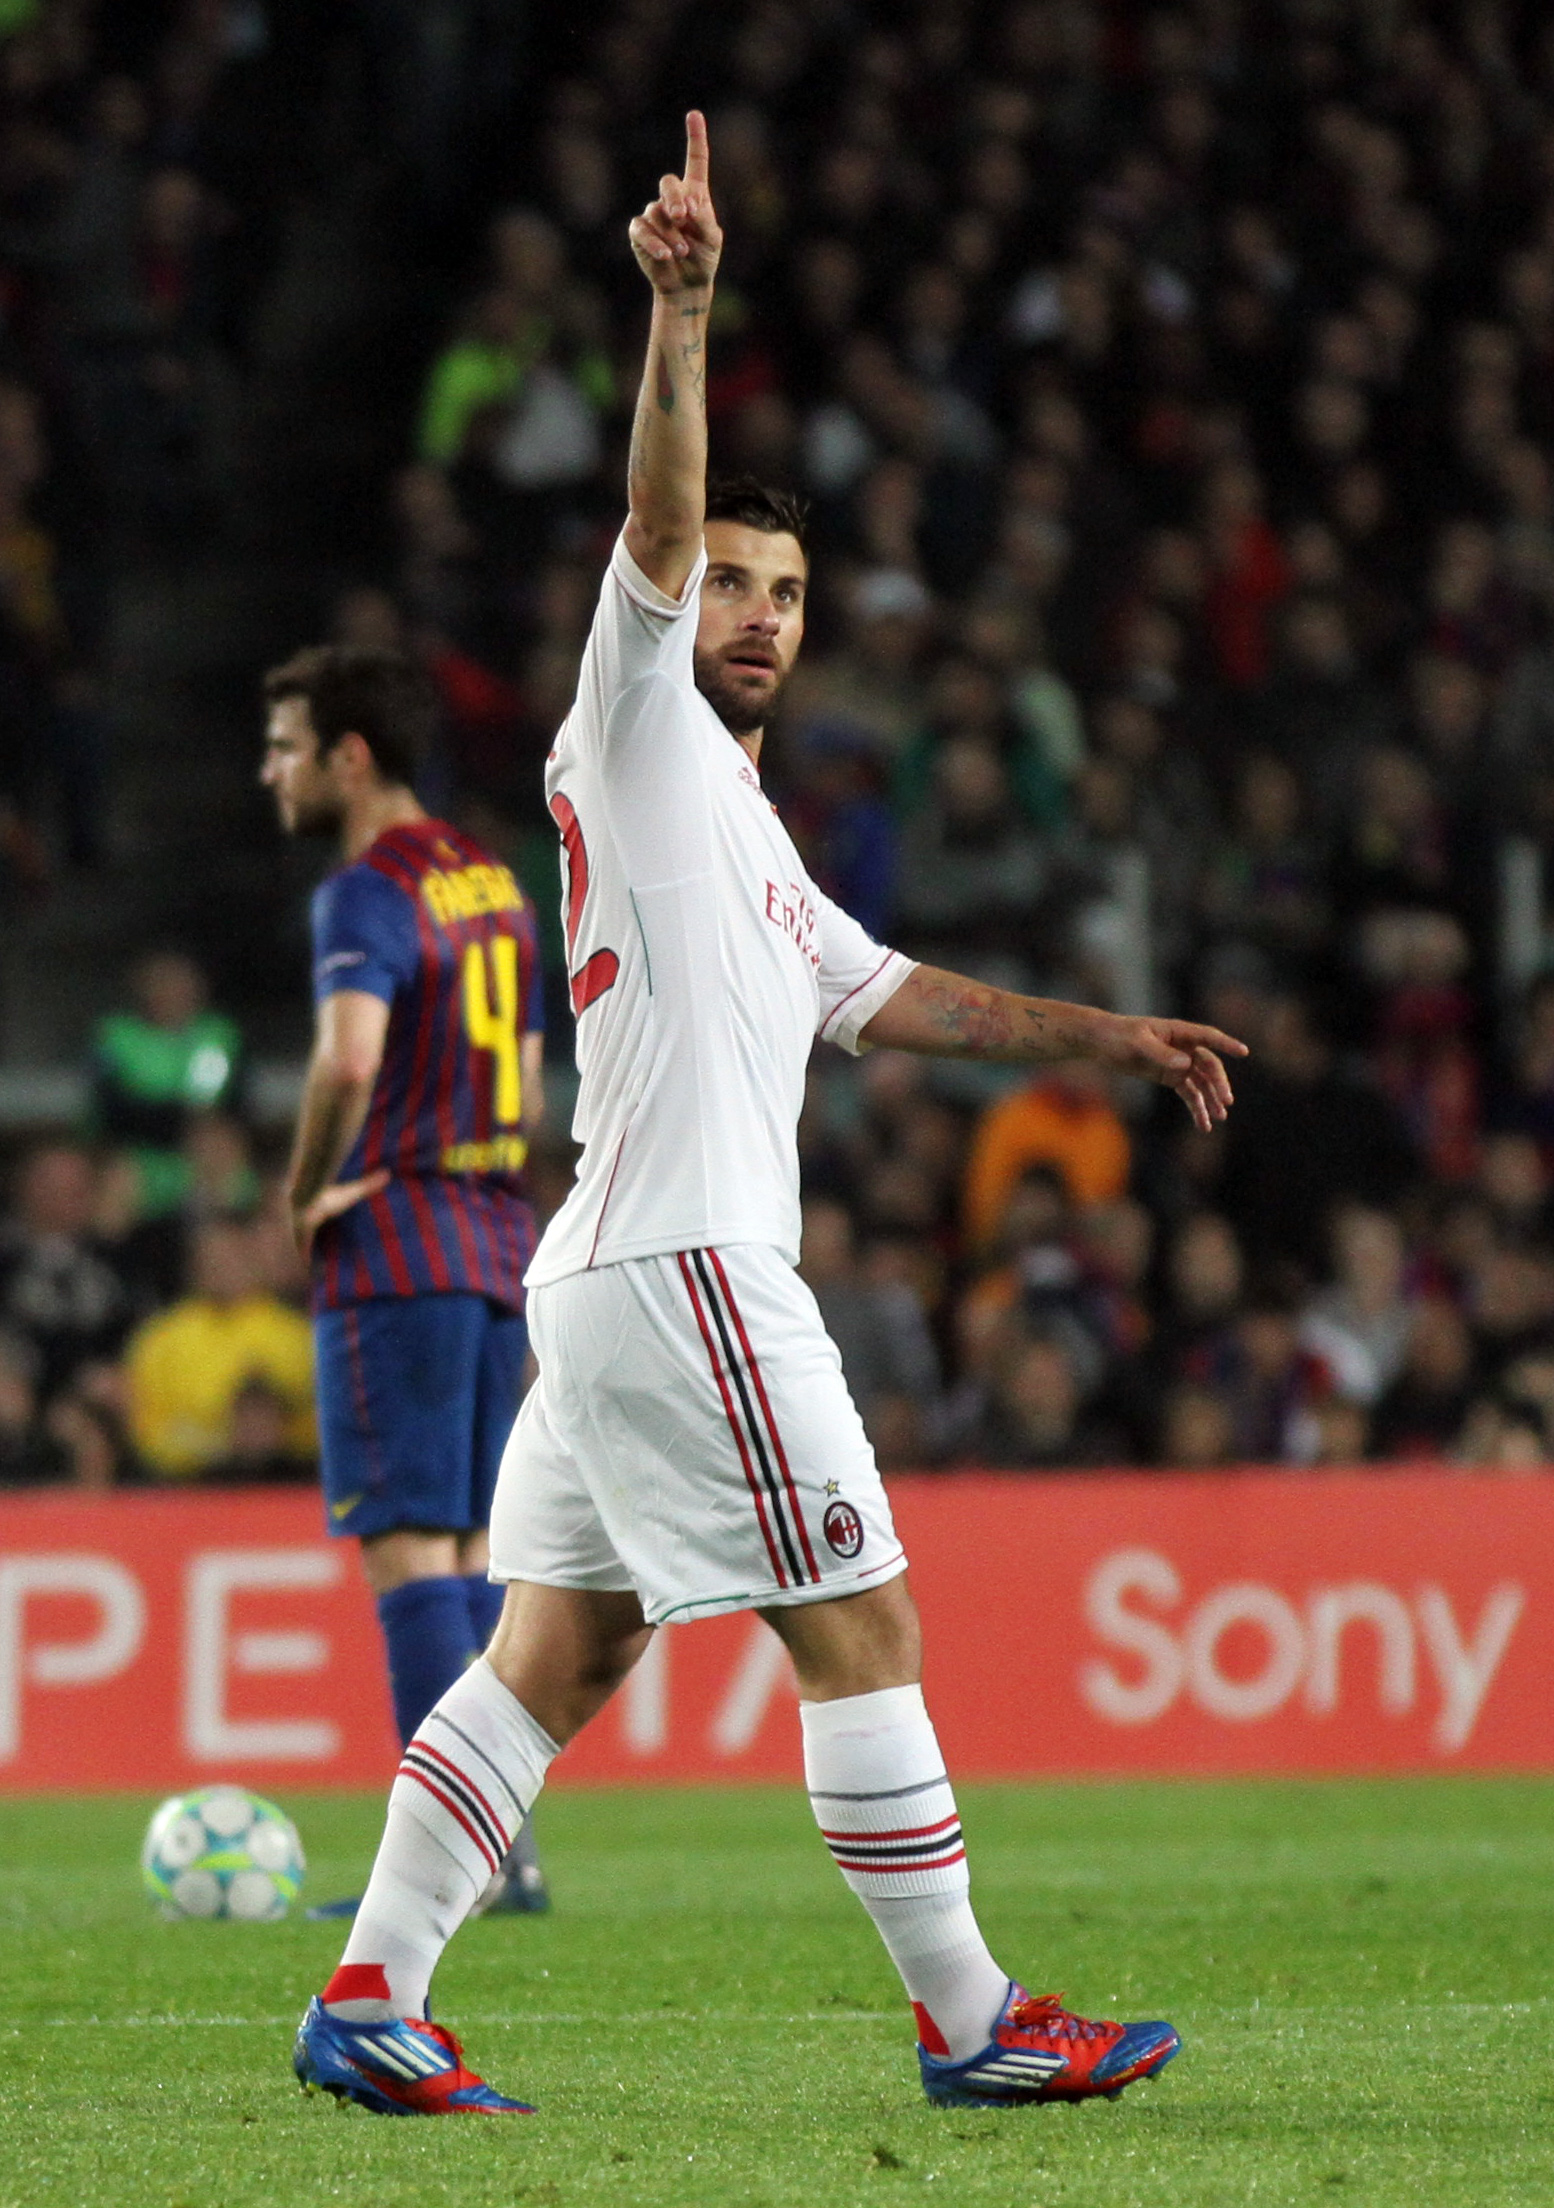 Antonio Nocerino kvitterade Barcelonas 1-0 ledning på Camp Nou...